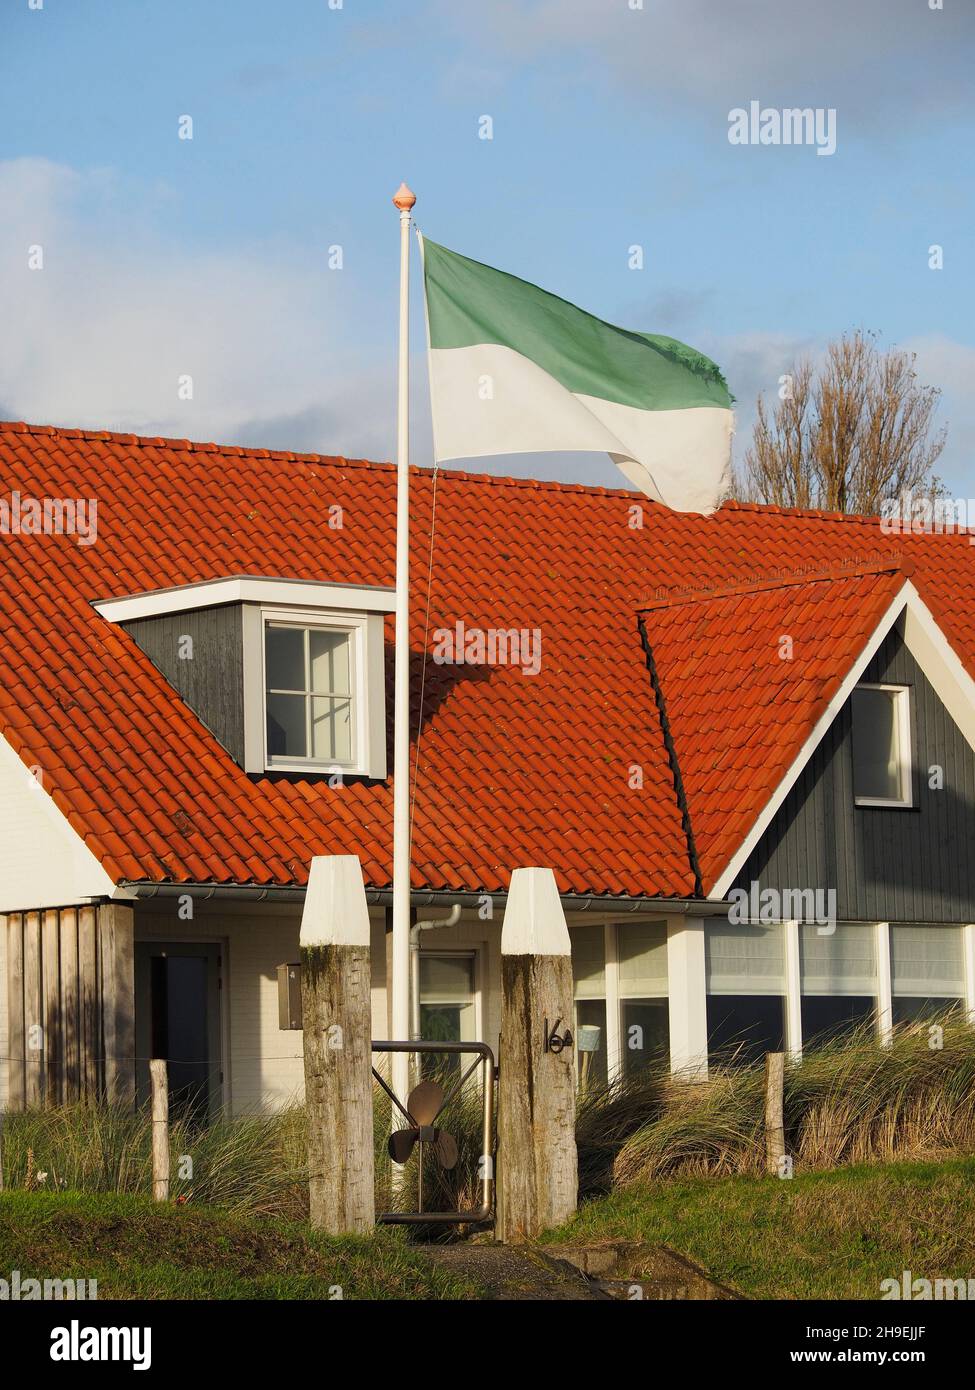 La bandiera dell'isola di Vlieland è verde e bianca e la si vede ovunque sull'isola. Oost-Vlieland, Frisia, Paesi Bassi Foto Stock